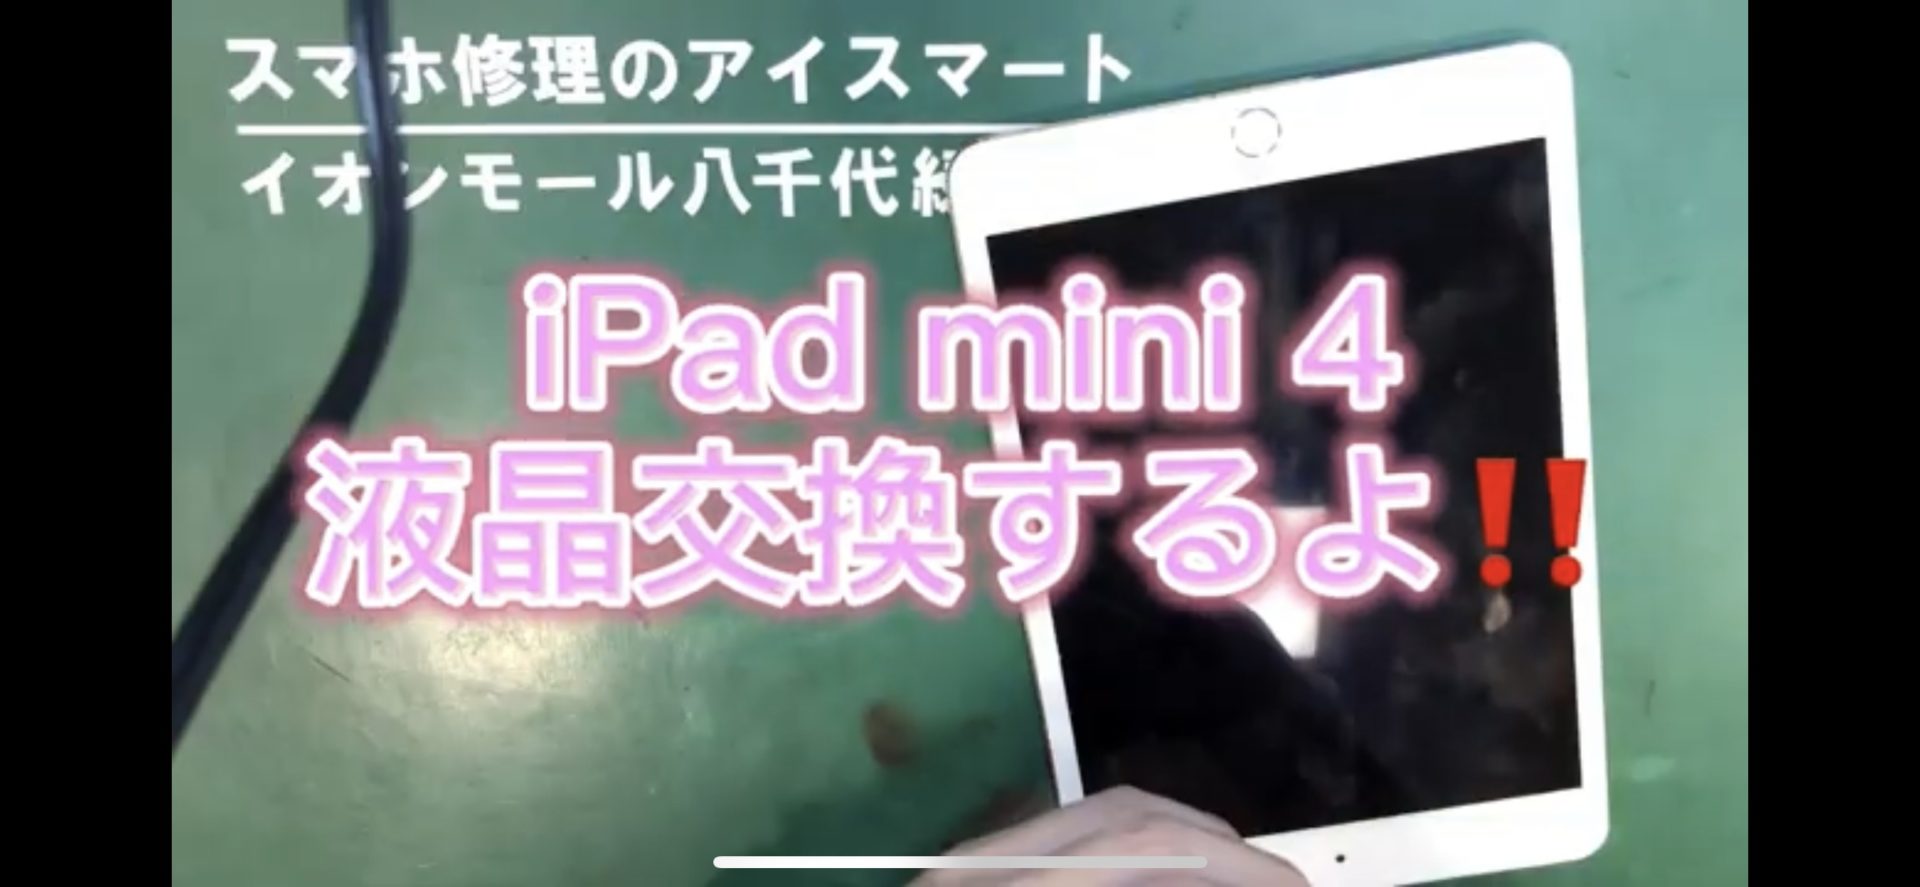 千葉でiPhone修理のEyeSmartのiPadmini4液晶交換画像